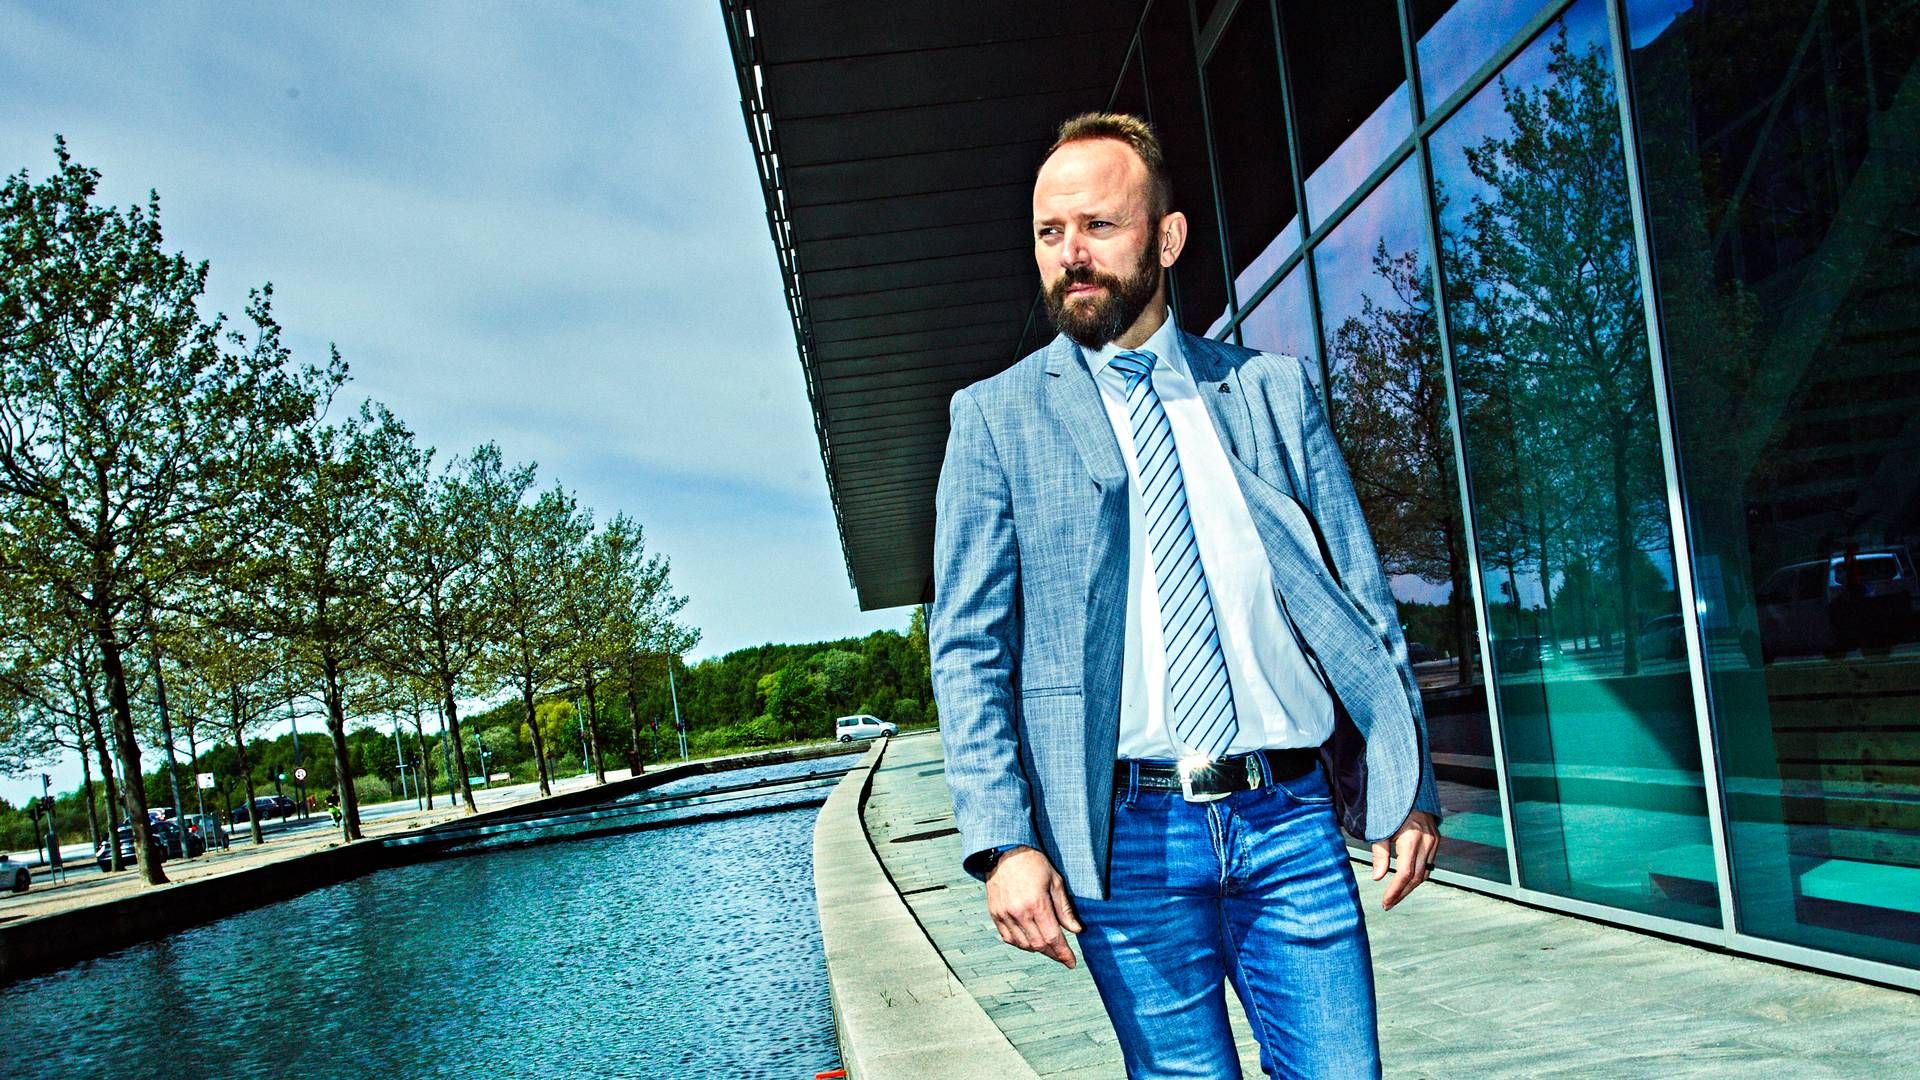 Det er både dyrt og besværligt at få foden inden for på det amerikanske marked, siger Mikkel Gleerup, som er topchef i det danske vindrederi Cadeler. | Foto: cadeler